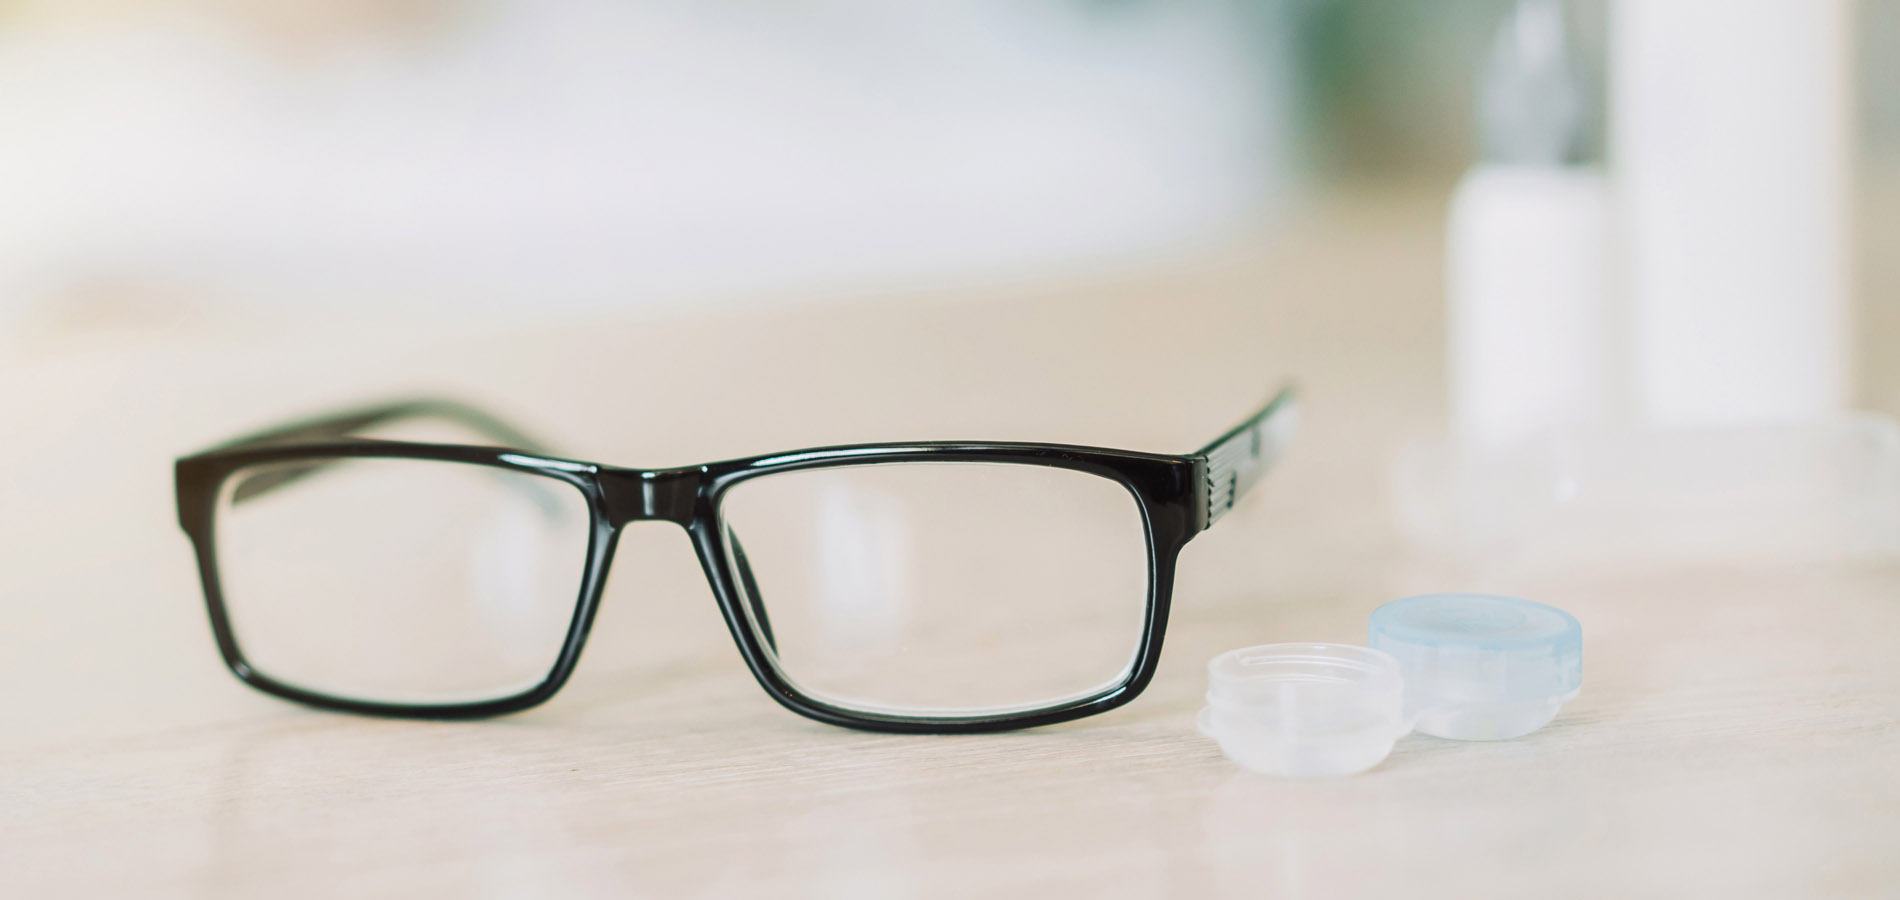 glasögon optiker kalmar linser björkegrens